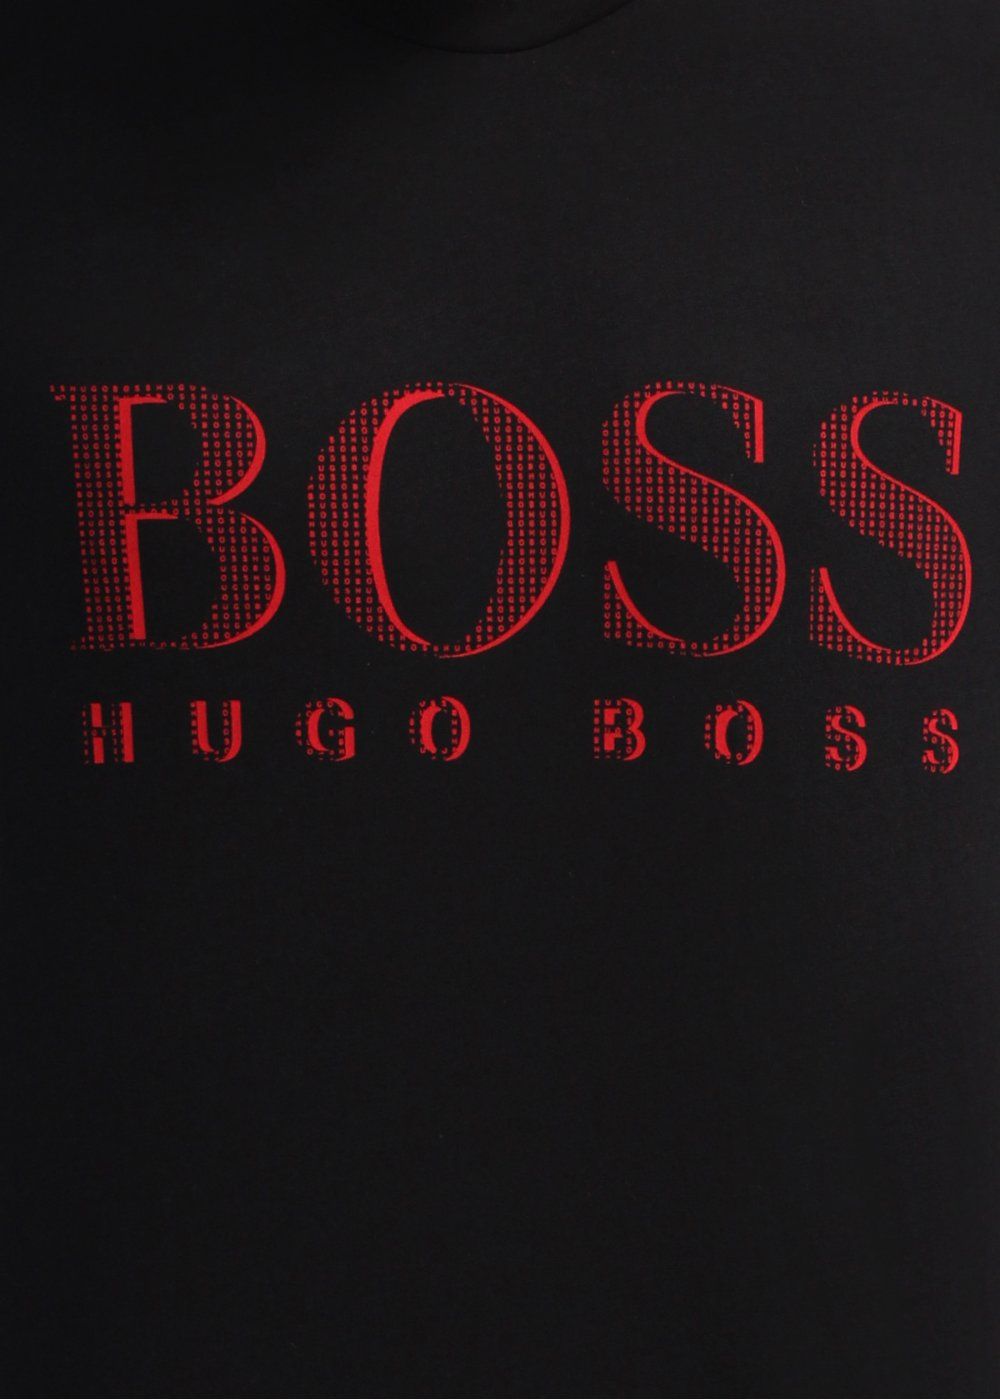 Hugo Boss Wallpaper Free Hugo Boss Background